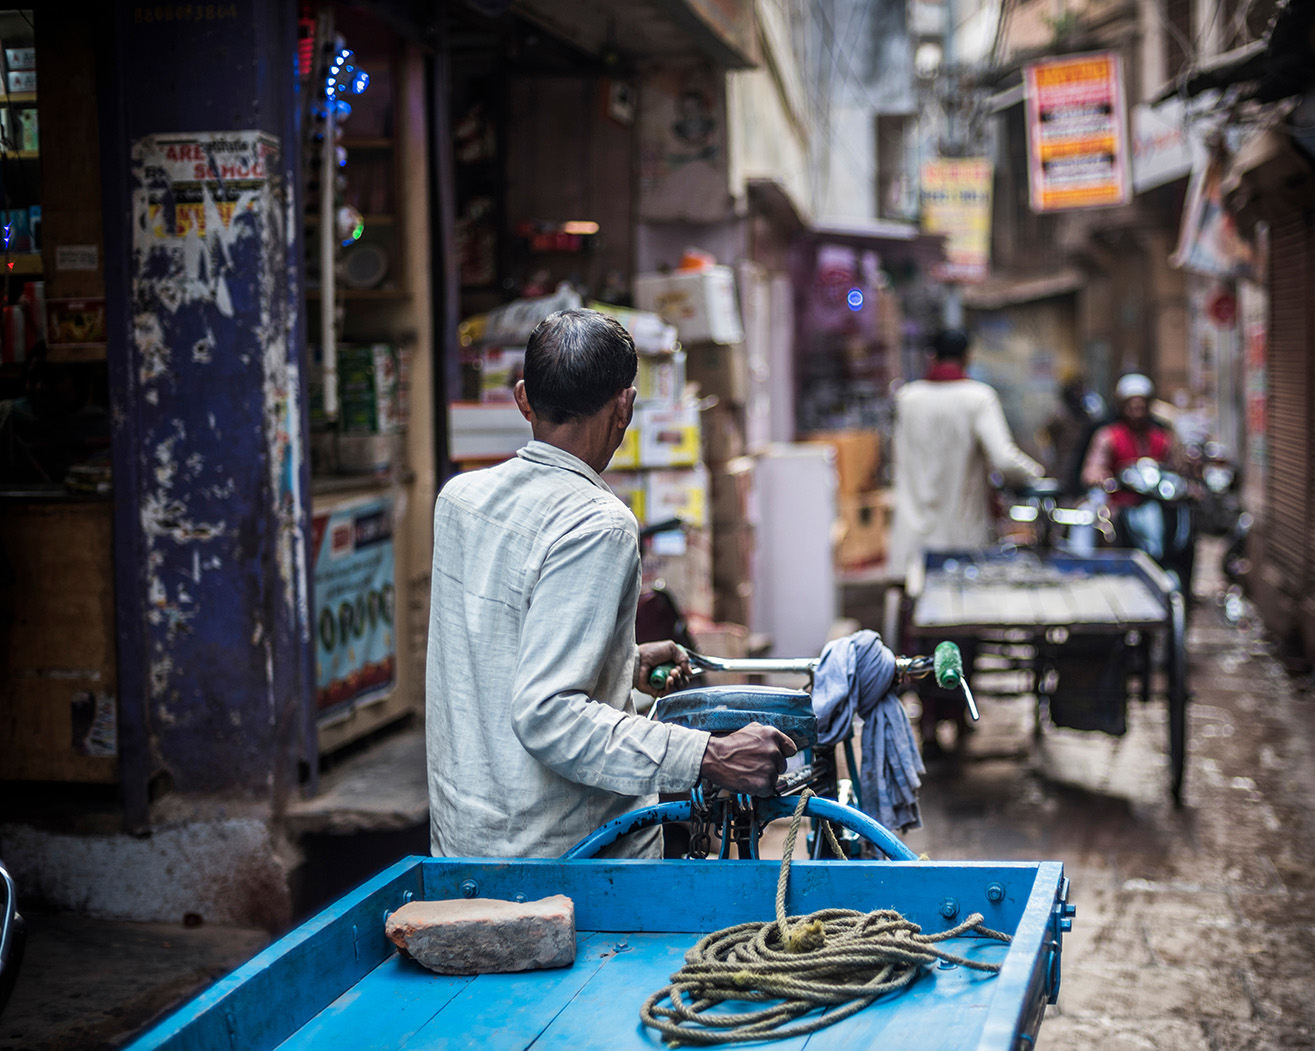 Man pulling blue cart in Varanasi streets